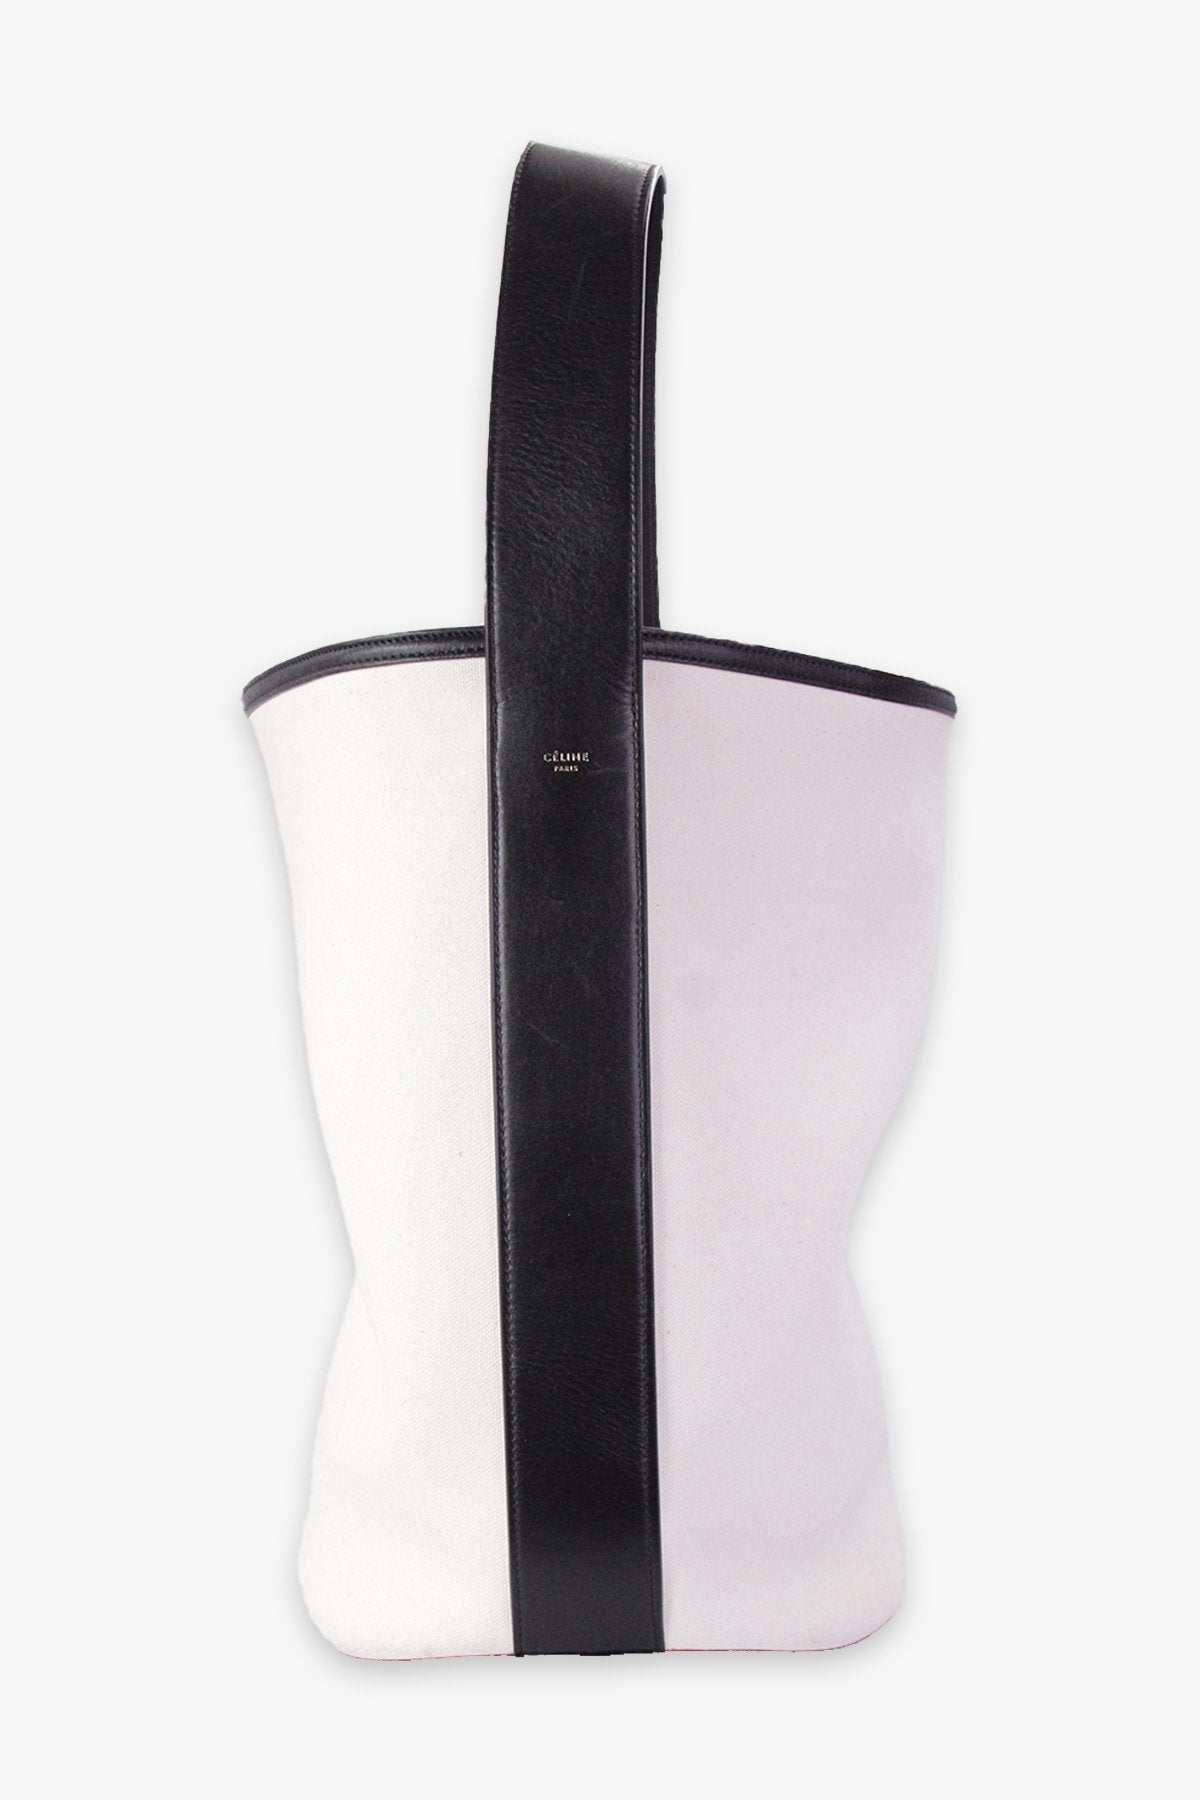 Celine Beige Canvas Shoulder Bag with Black Leather Strap - shop-olivia.com